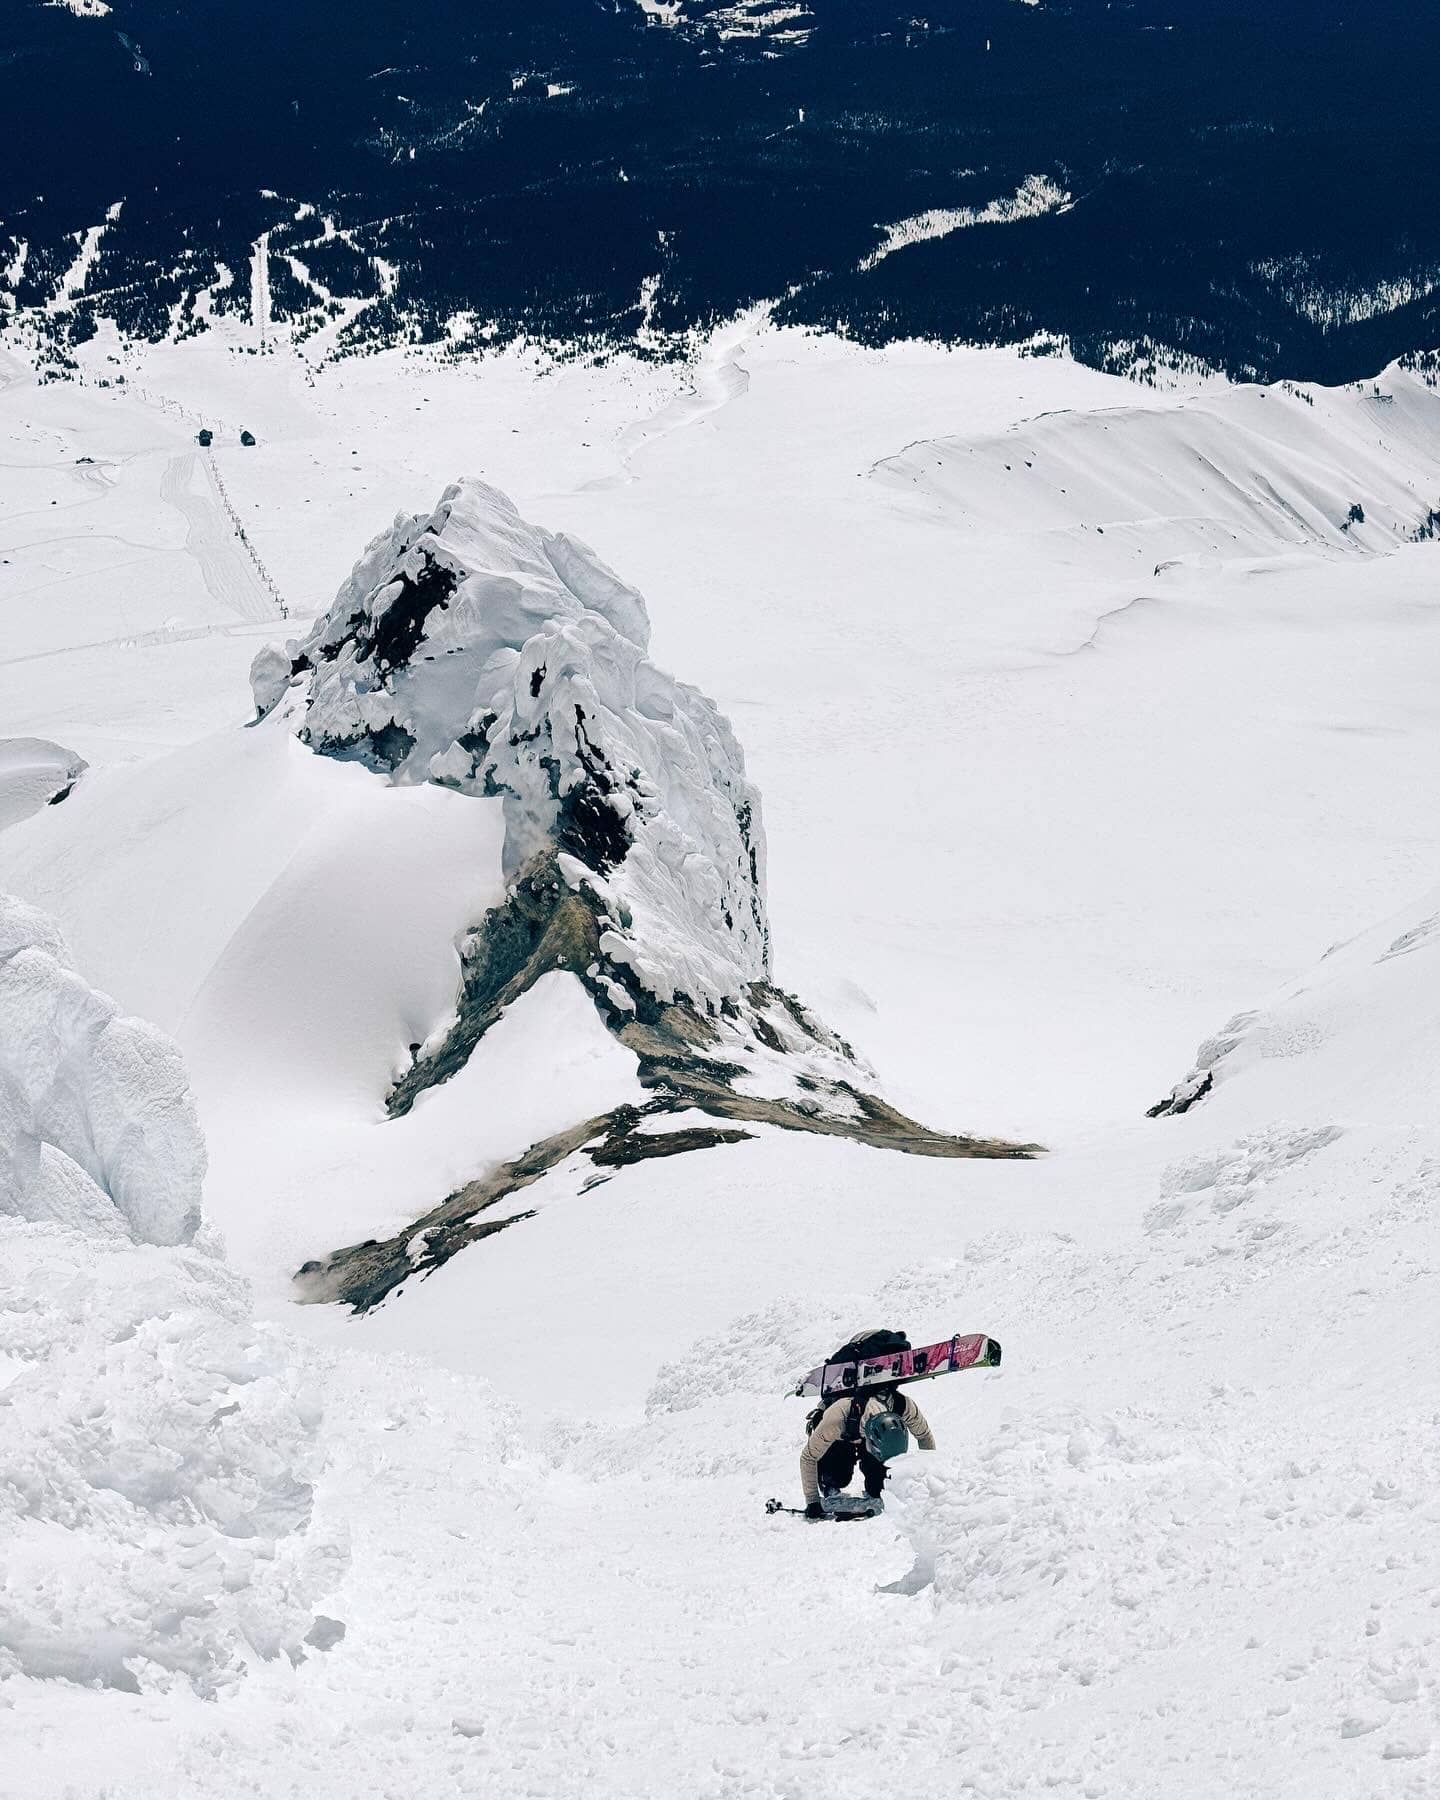 Char Surio climbing a mountain with a splitboard.